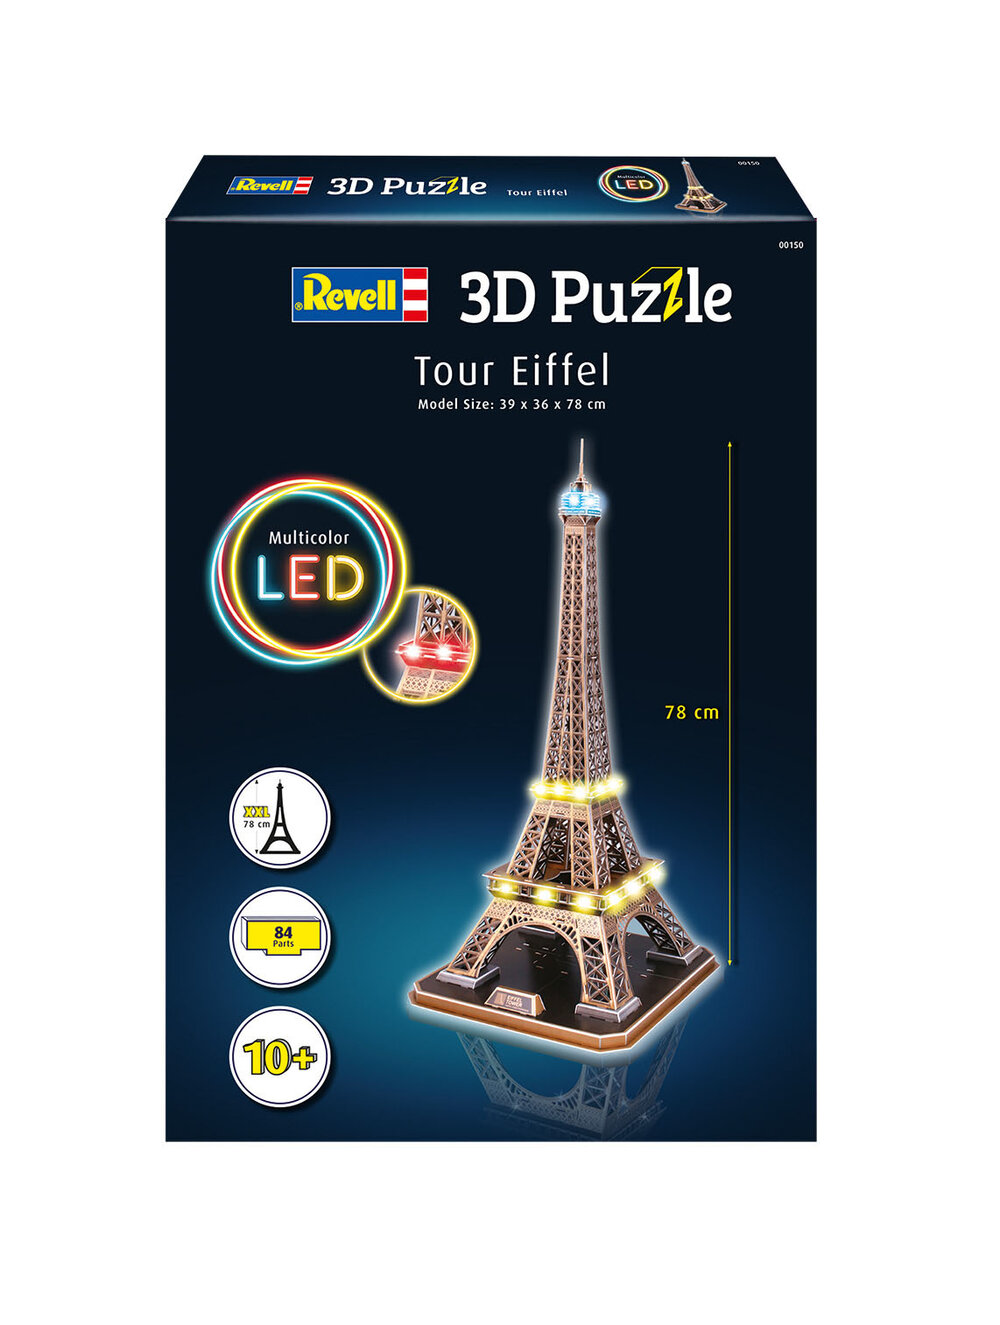 Puzzle 3D Tour Eiffel - Night Edition - Puzzles - Ravensburger